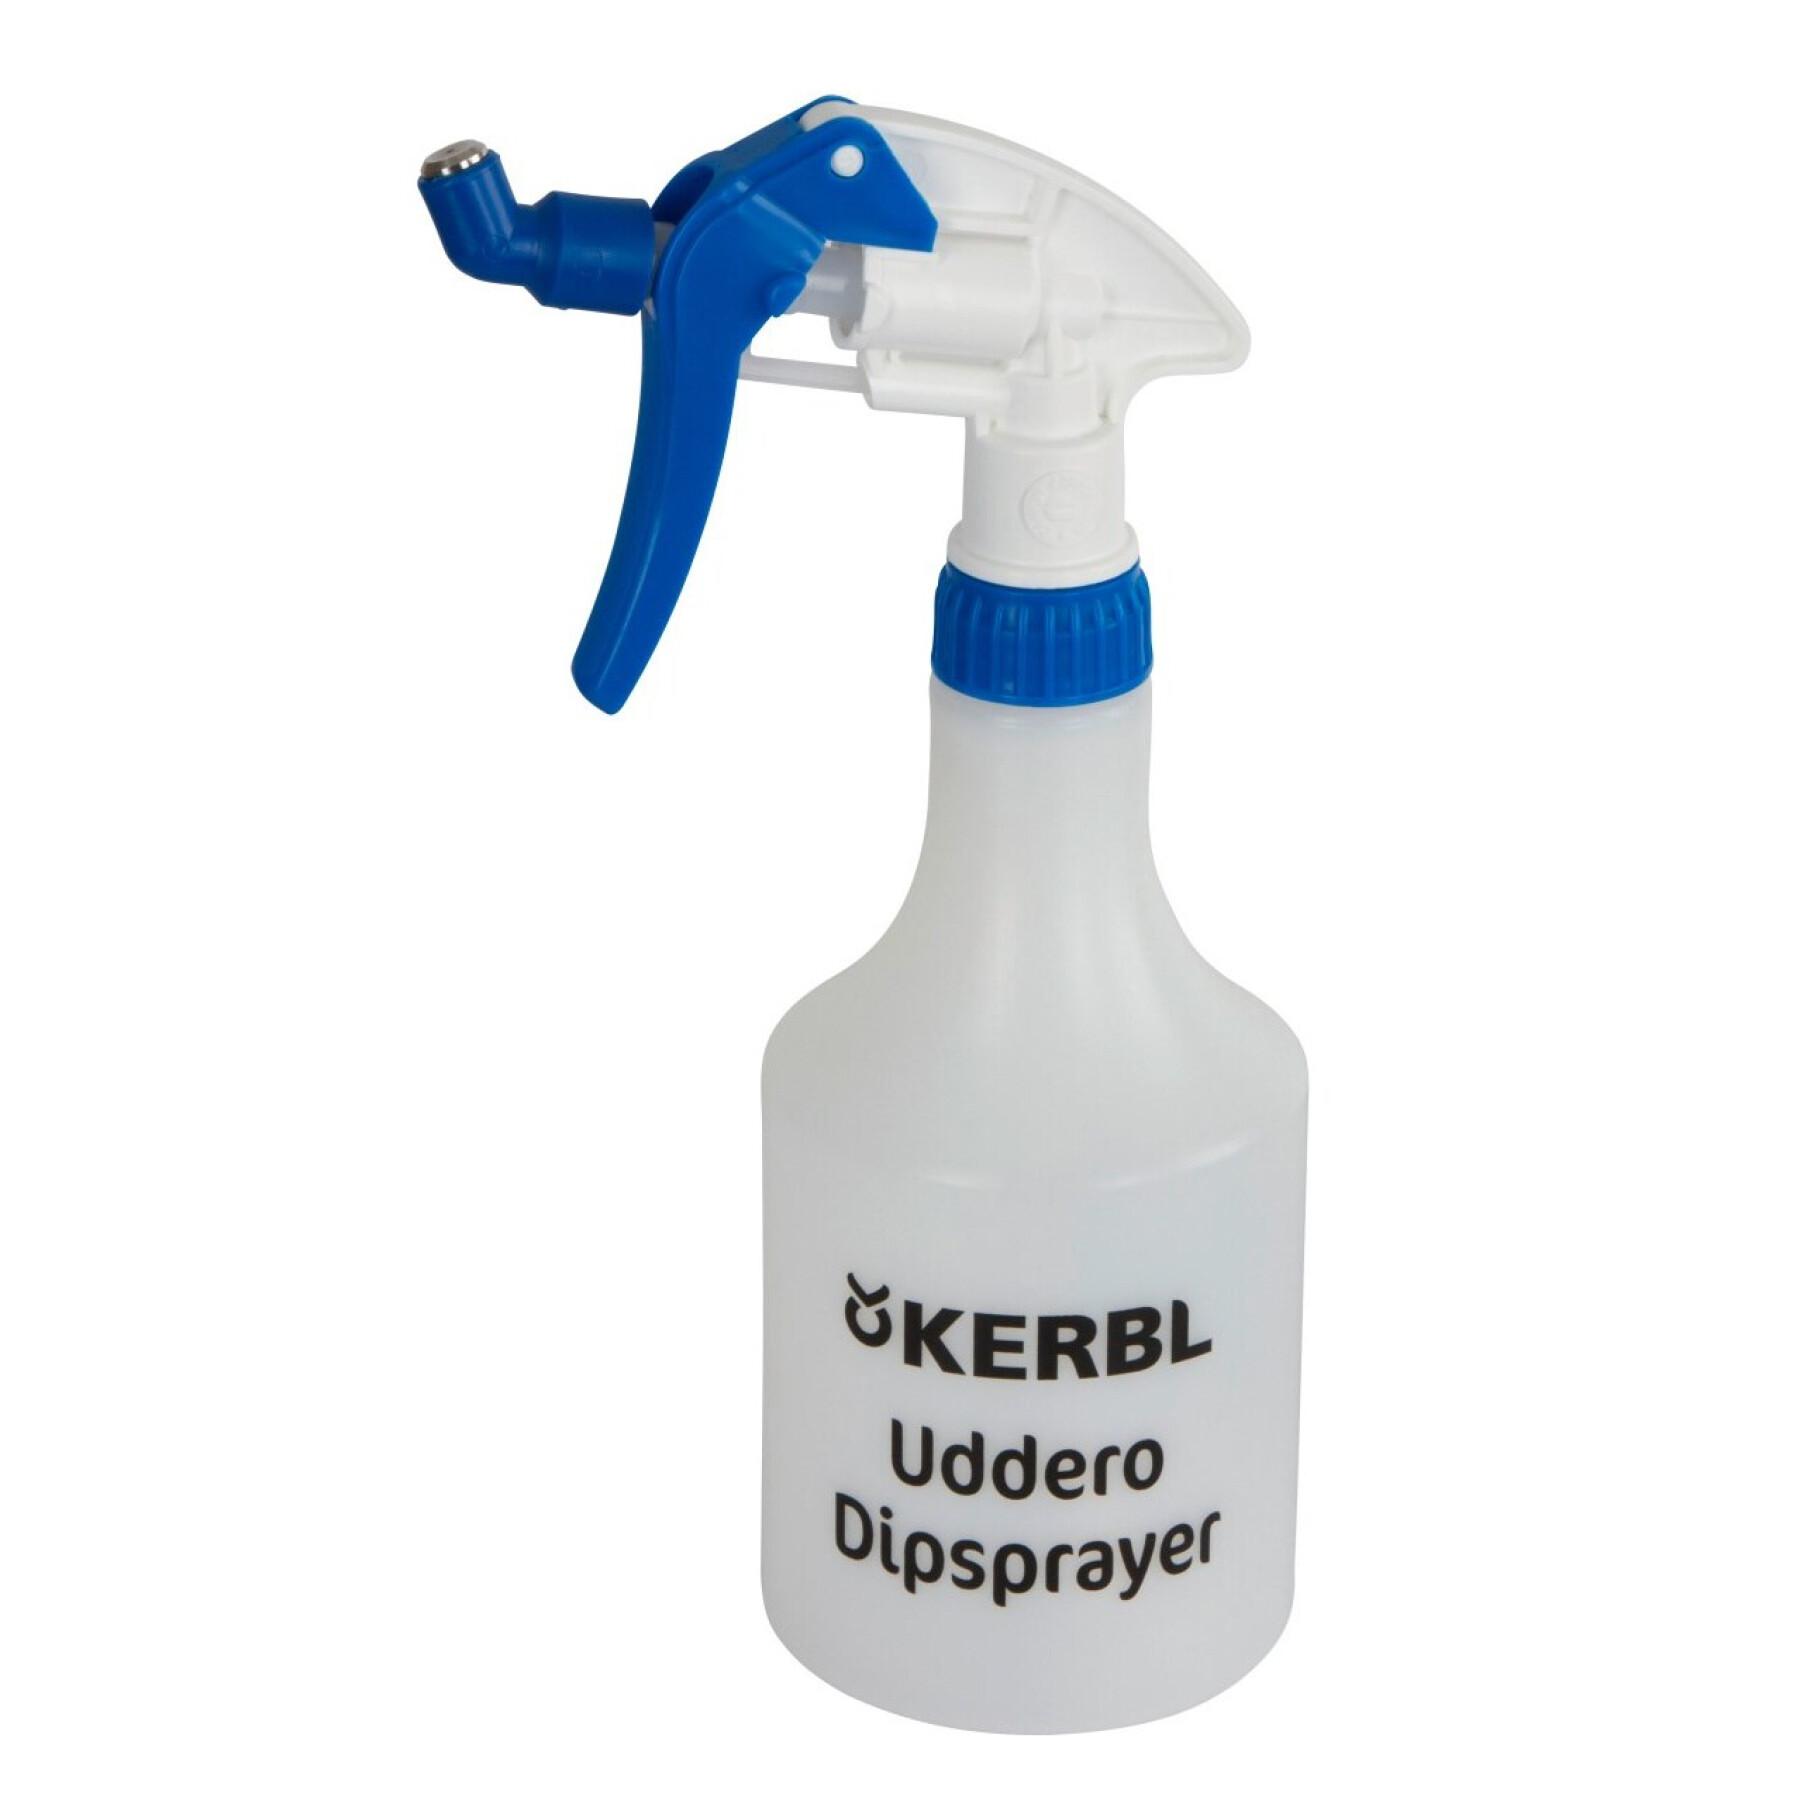 Angled spray Kerbl Uddero Sprayer